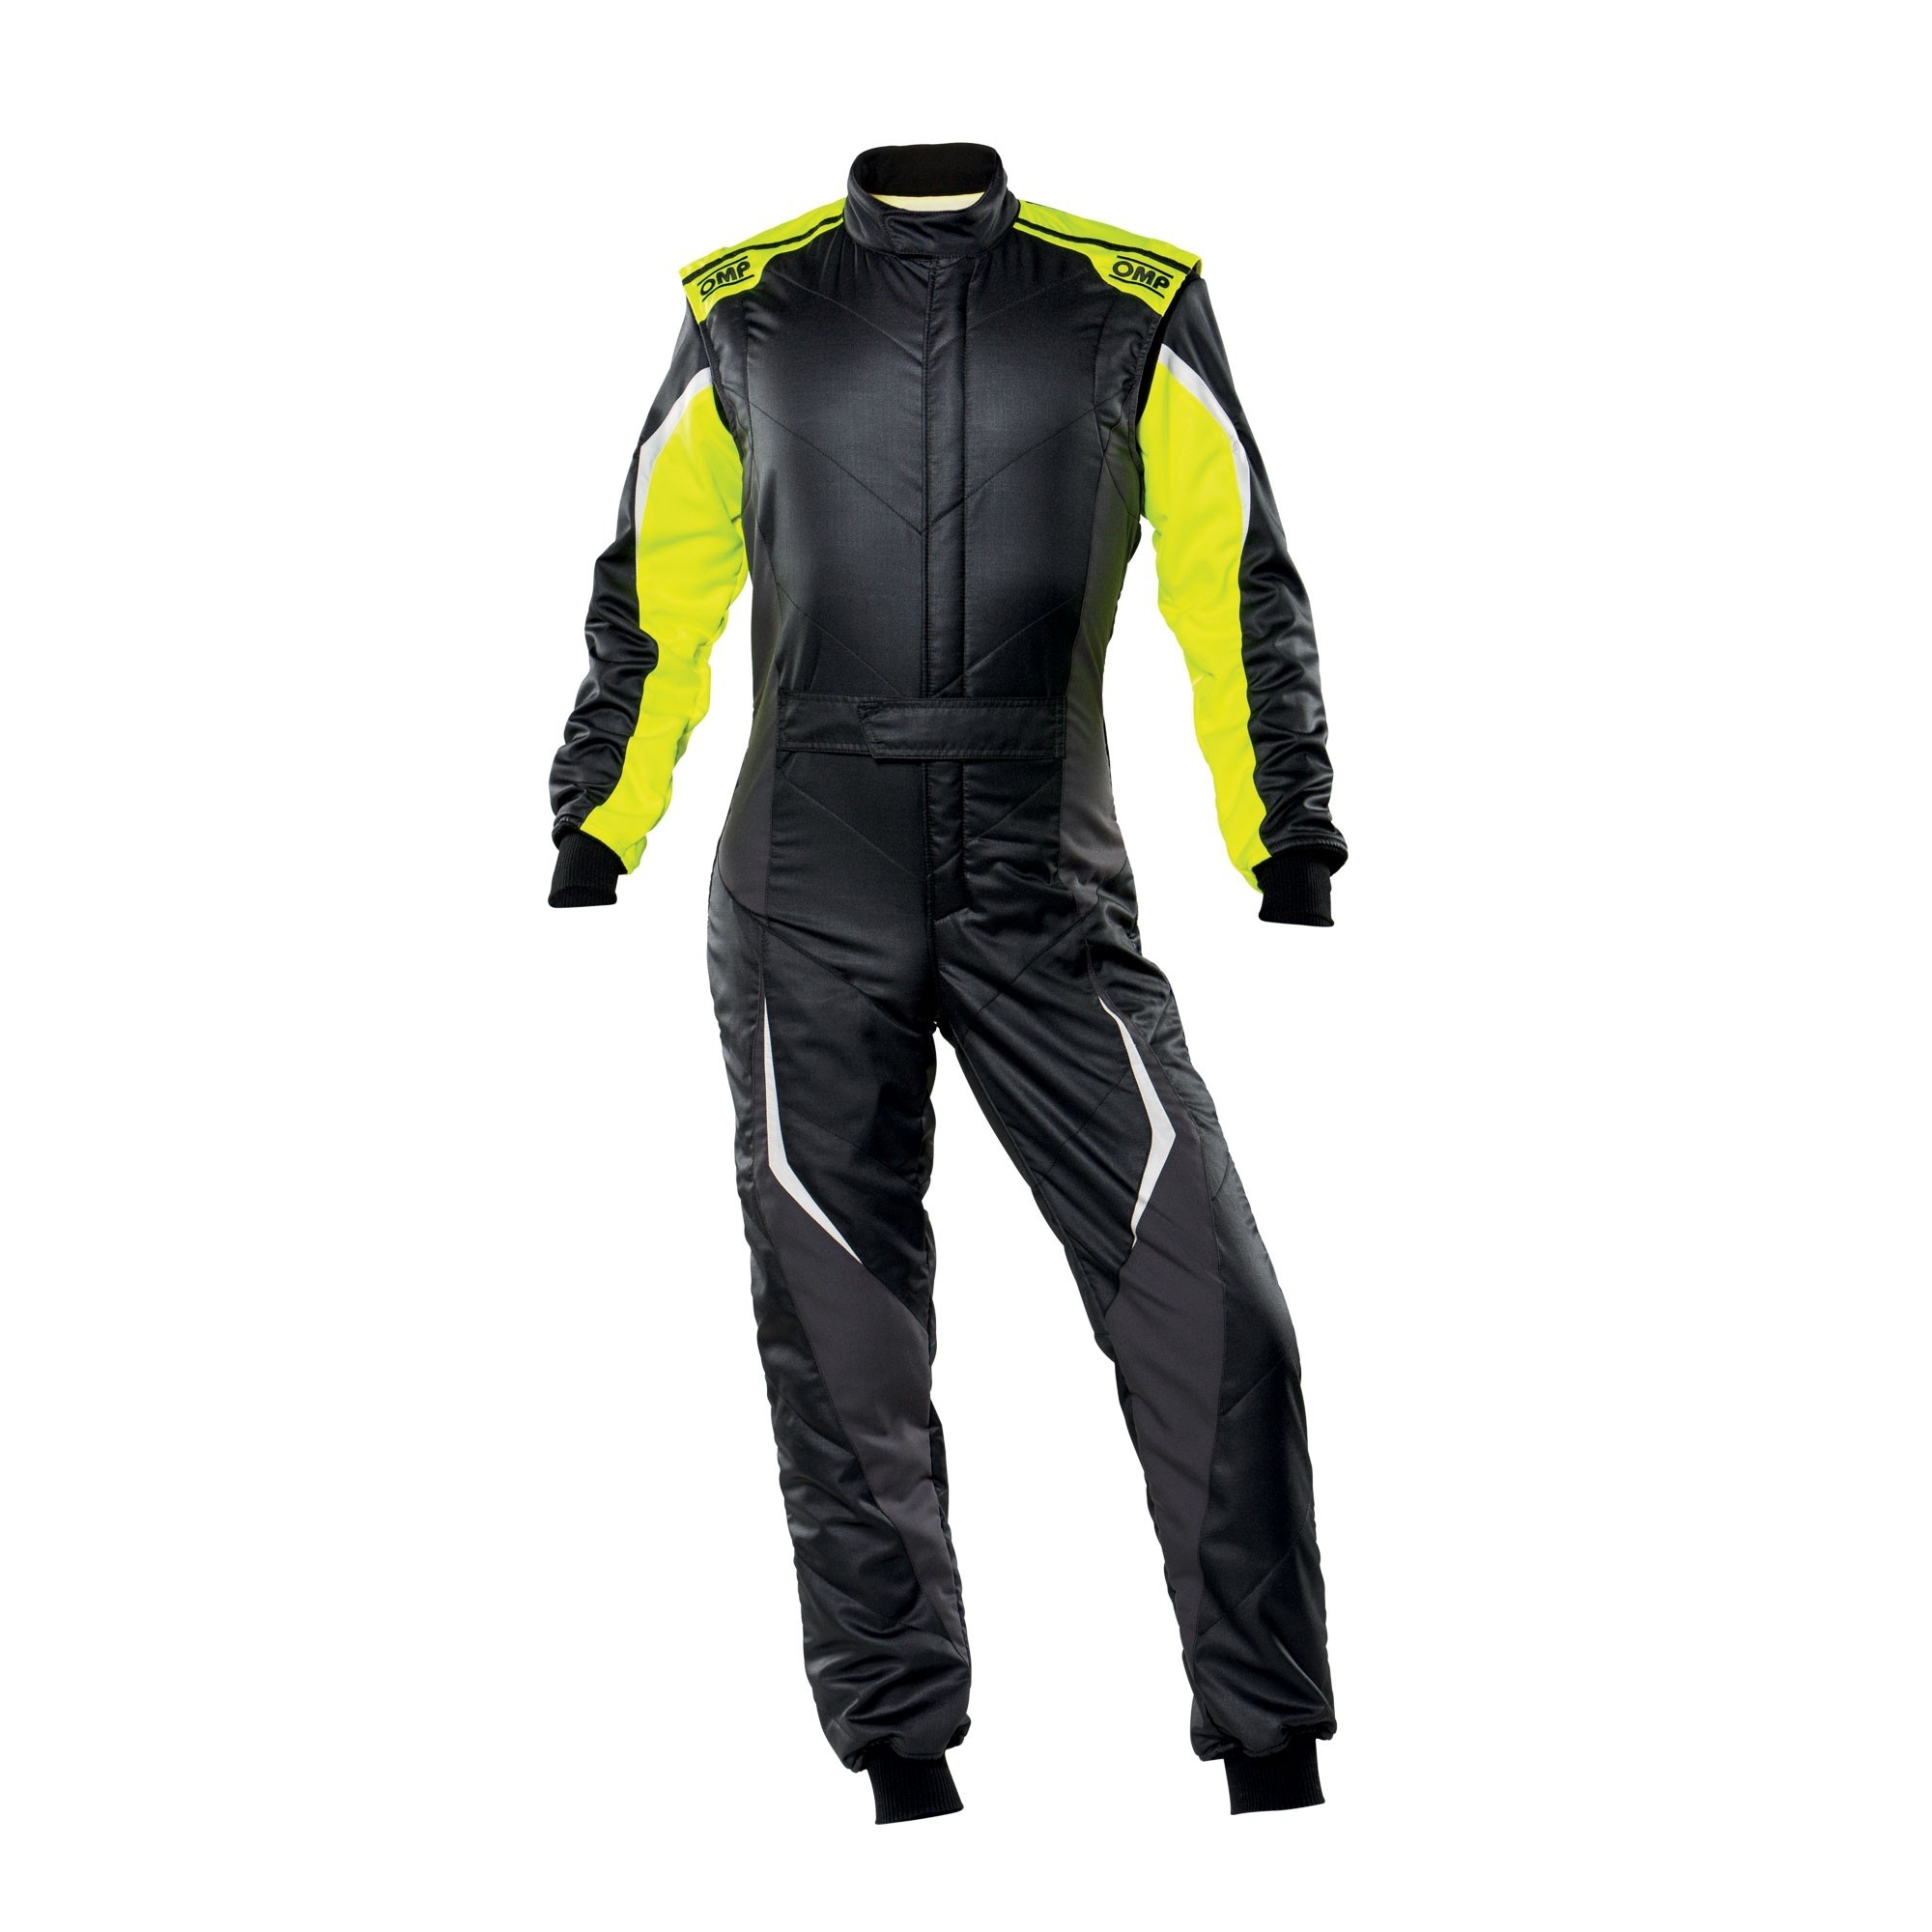 YELLOW TECNICA EVO SUIT MY2021 Go Kart Race Suit Karting Suit Motorsports Racing 